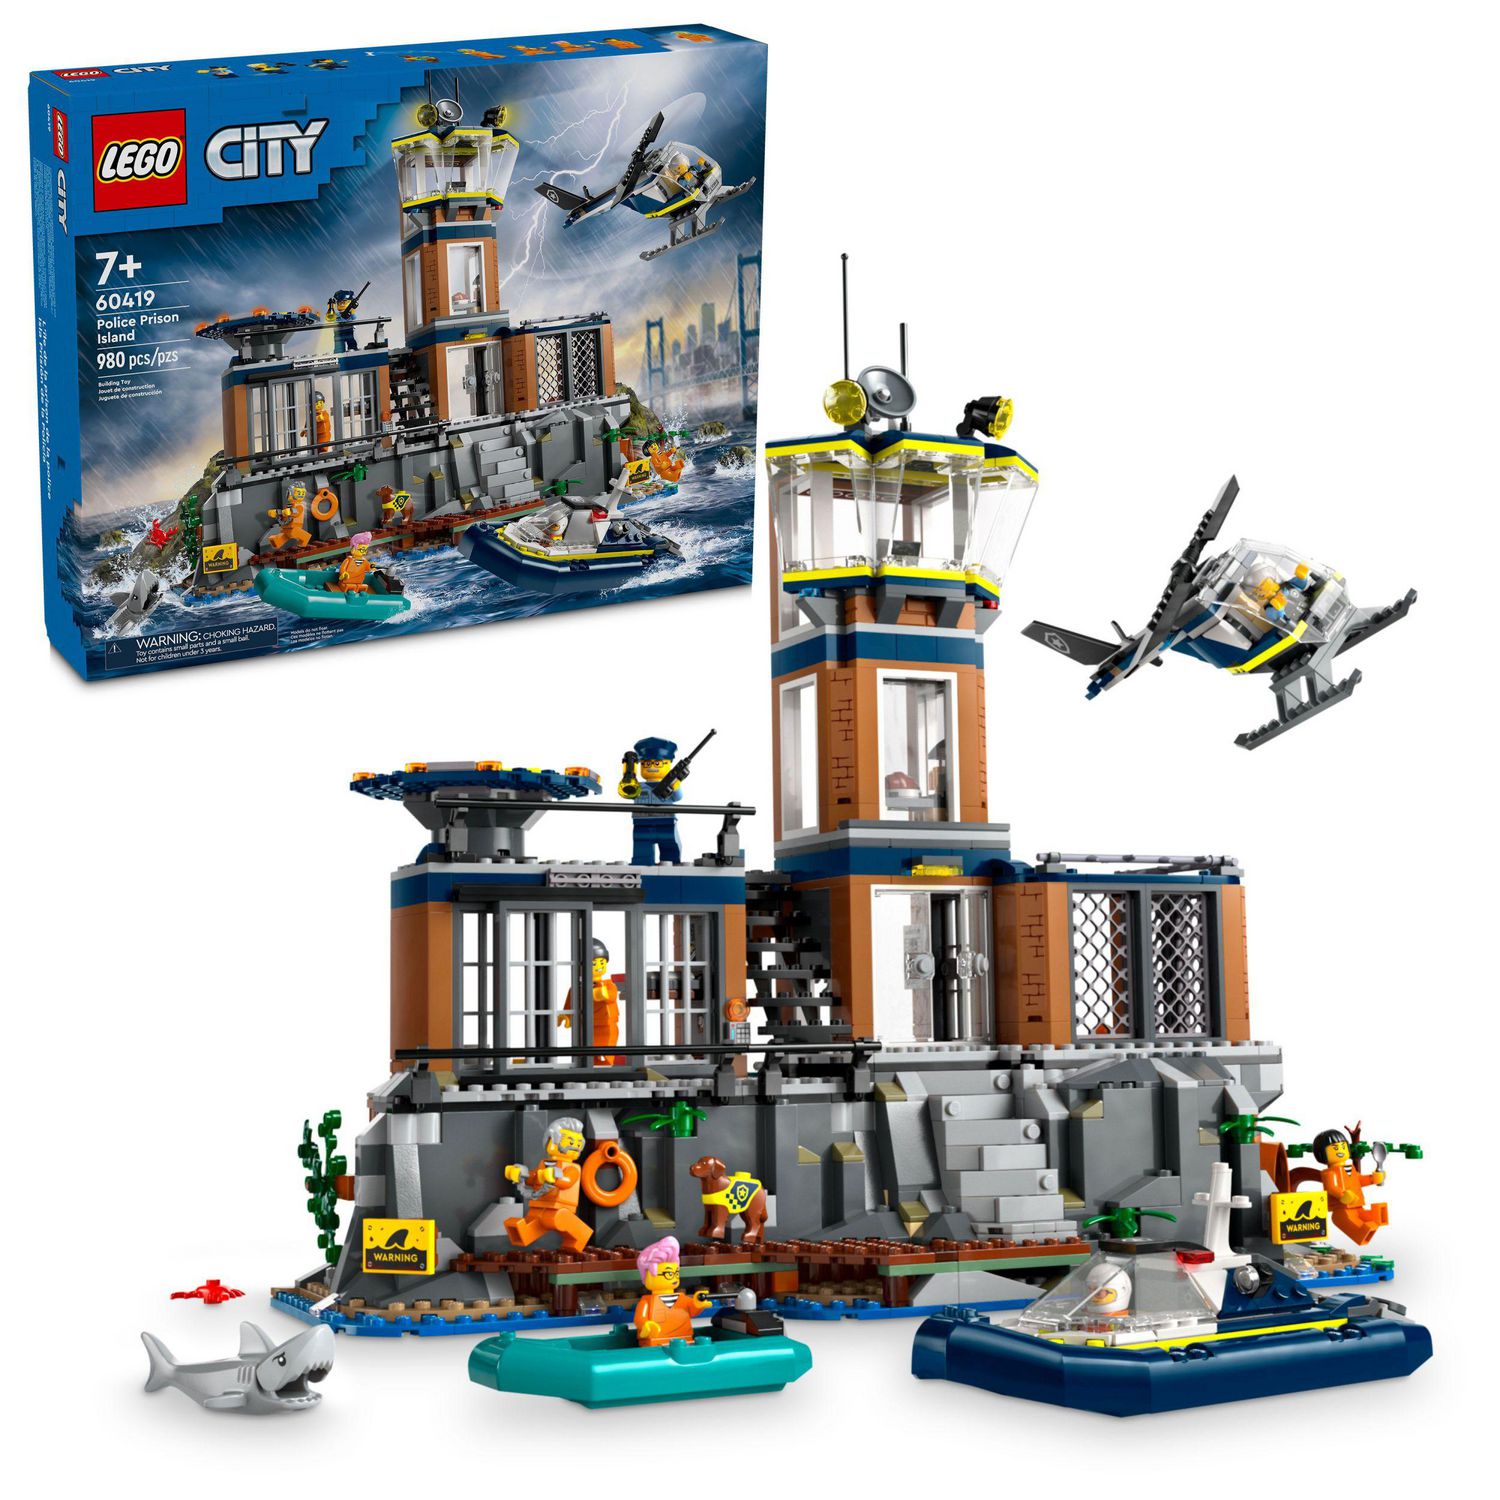 LEGO® City 60371 Le QG des Véhicules d'Urgence, Hélicoptère Jouet